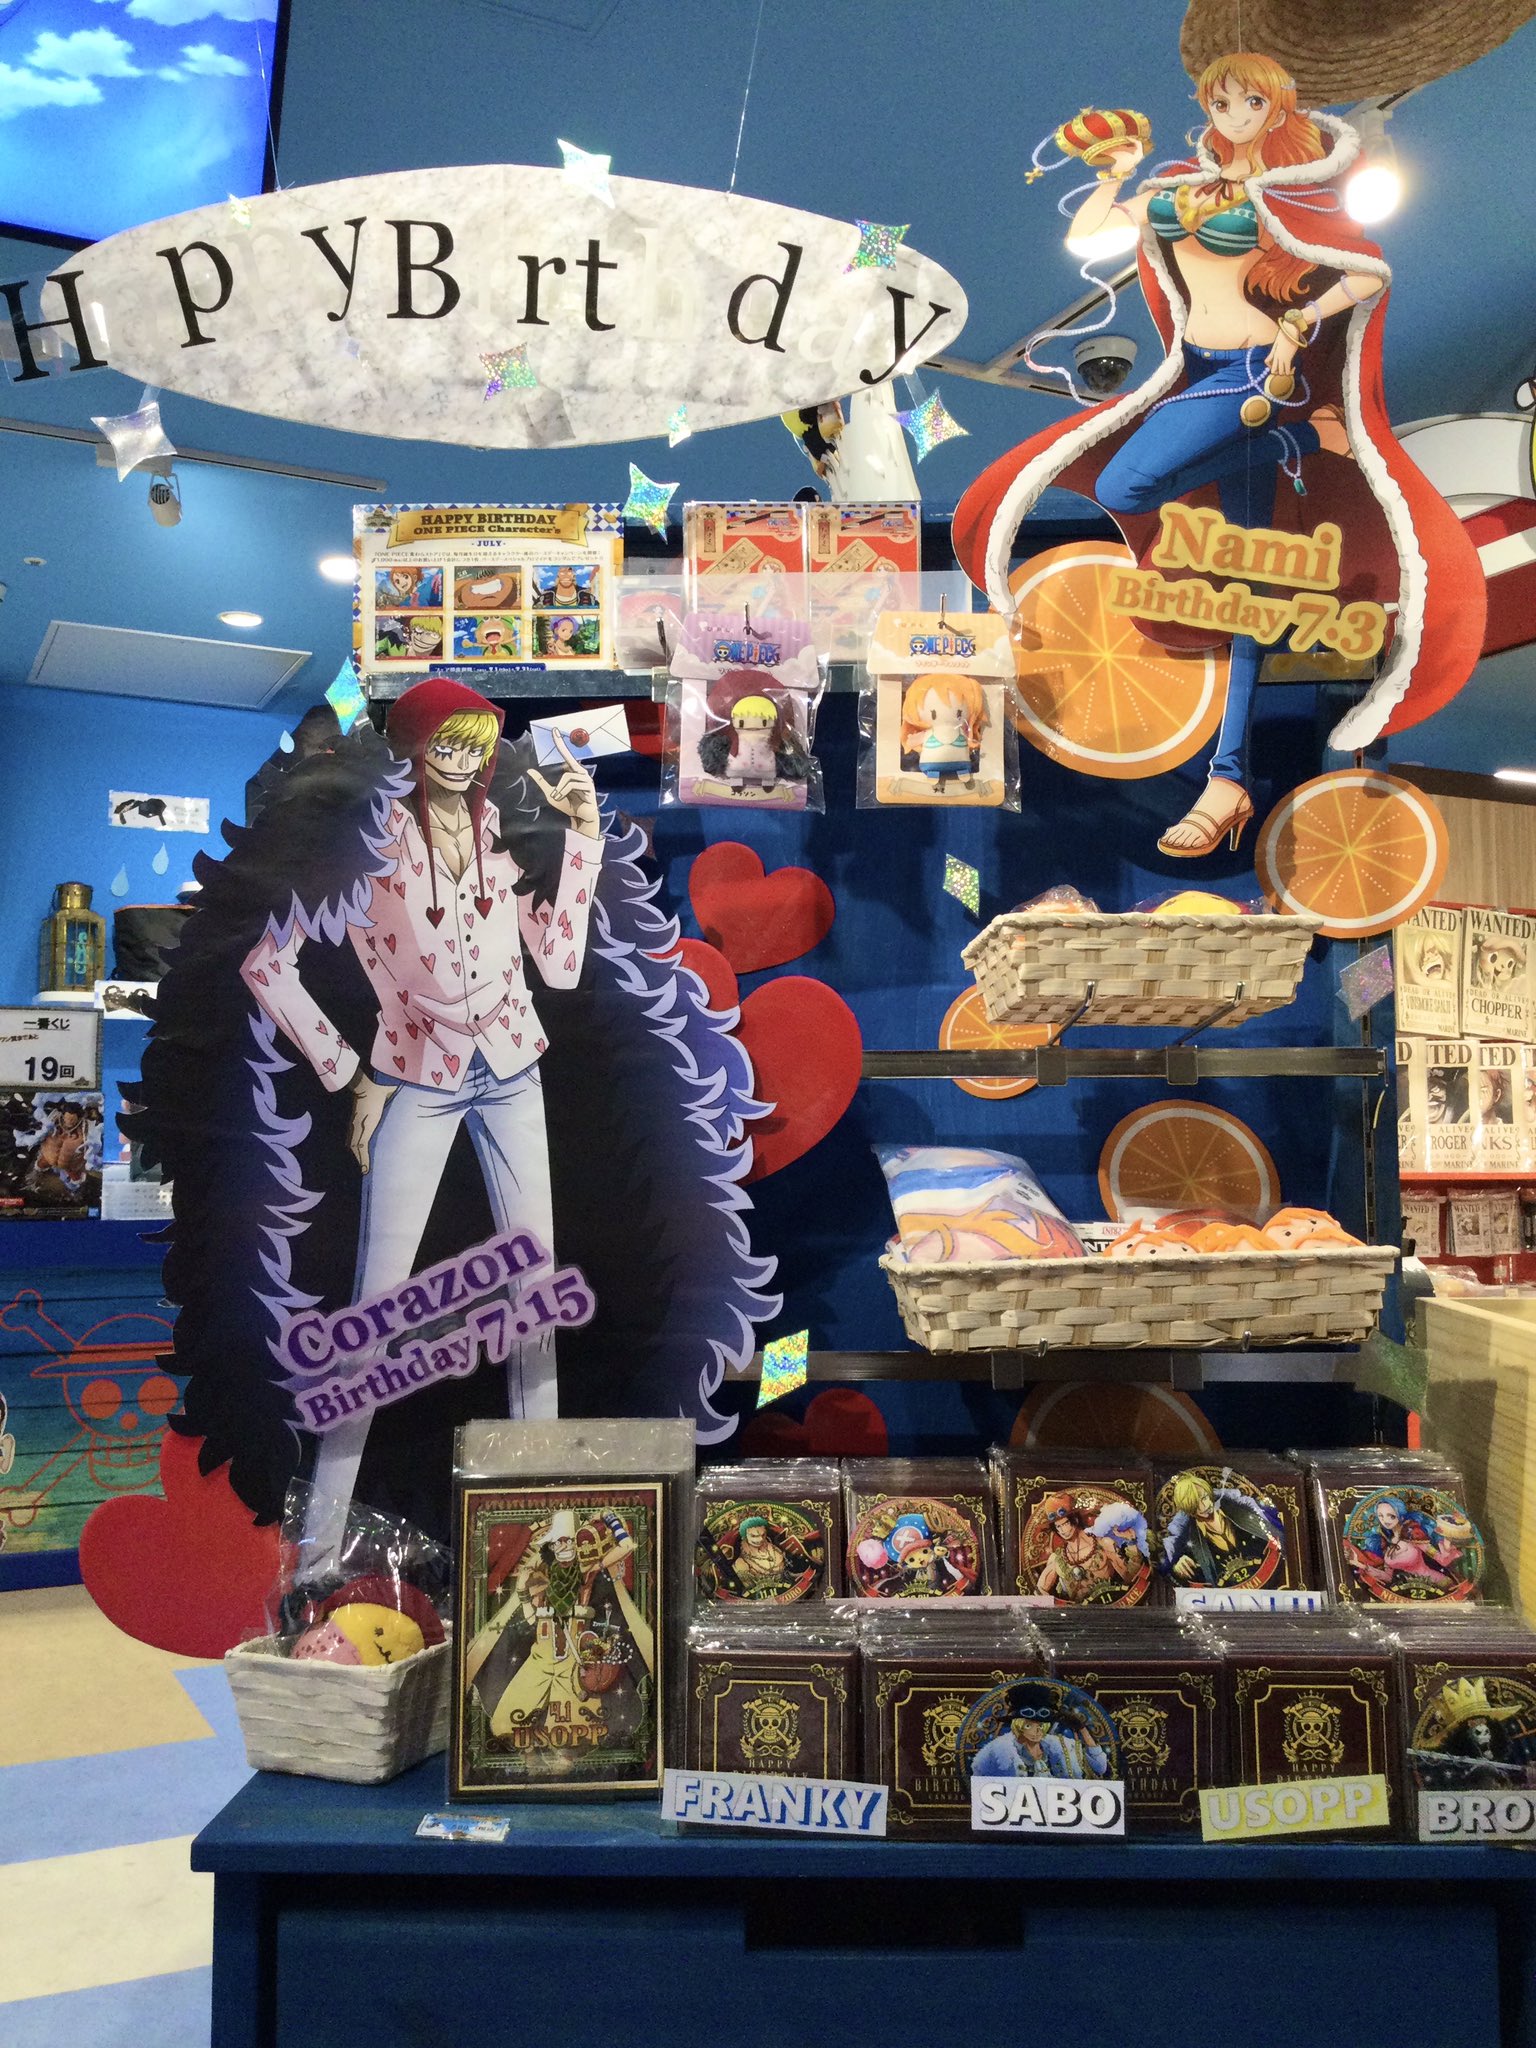 Twitter 上的 One Piece 麦わらストア池袋店 ご案内 麦わらストア池袋店では7月のバースデーコーナーを展開中 お好きなキャラクターと撮影できるプロップスも設置しております バースデーキャンペーンも開催中 Onepiece 麦わらストア T Co